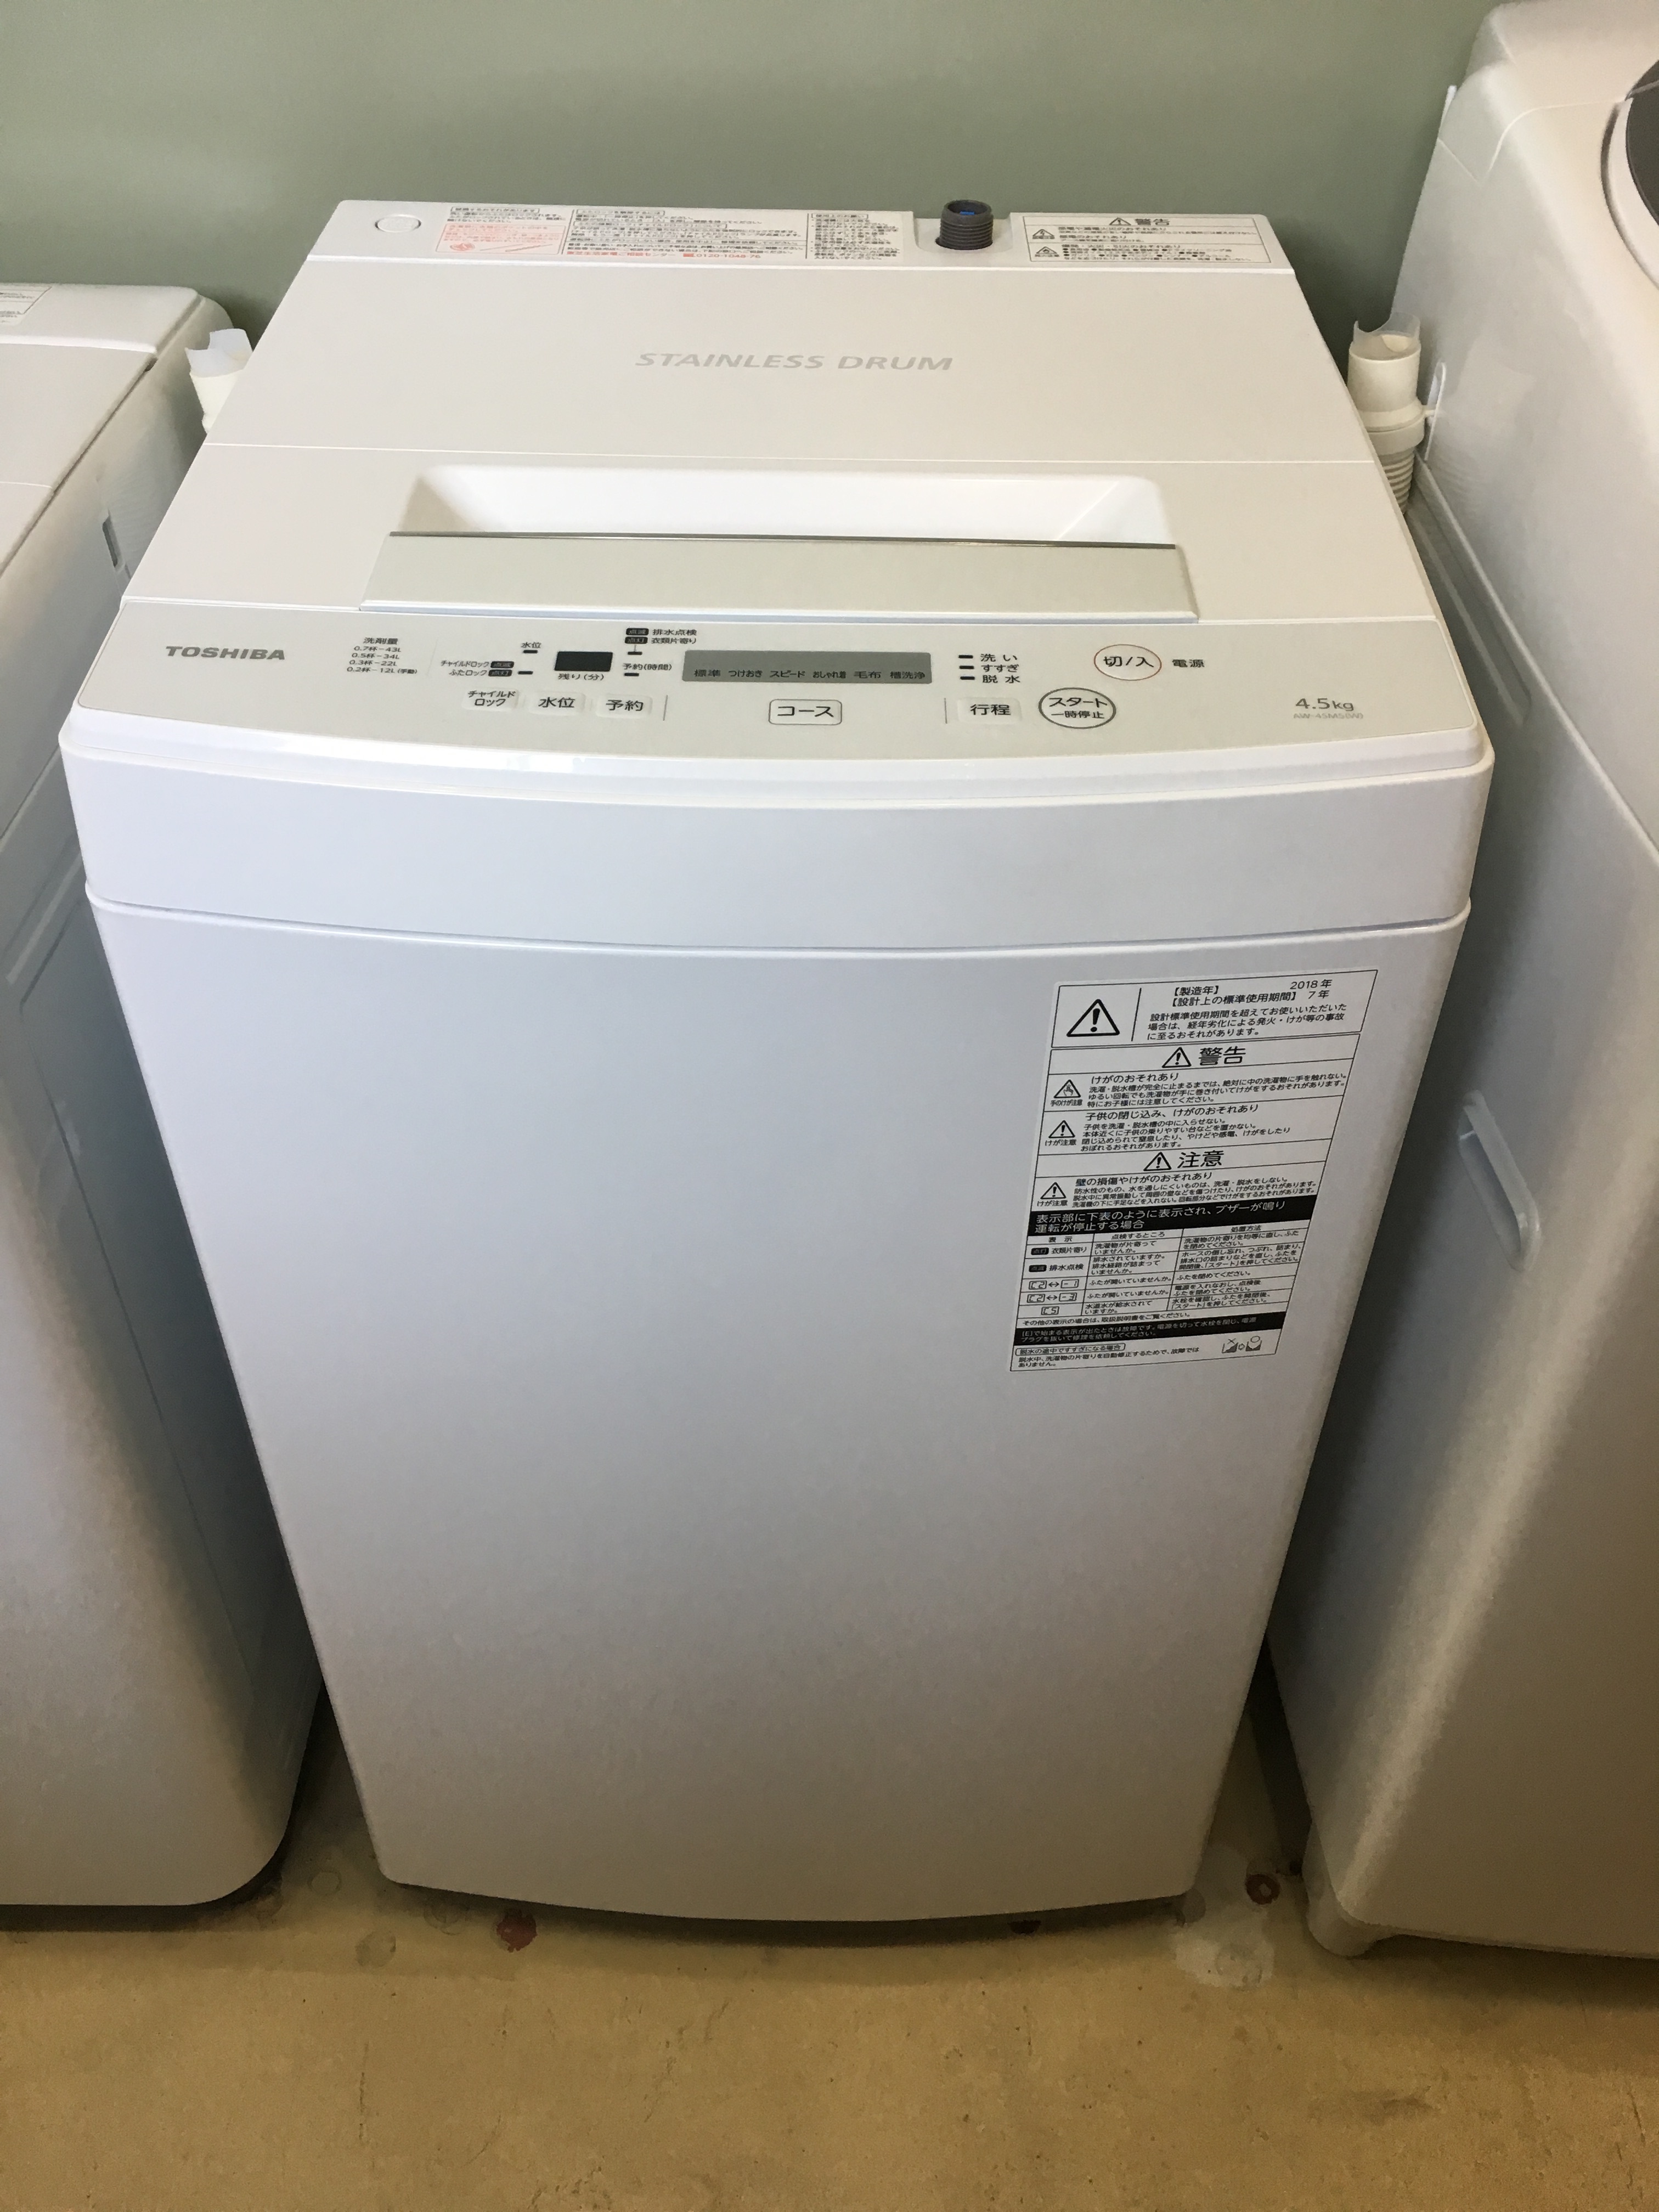 2018年式 4.5kg TOSHIBA 洗濯機 AW-45M5(W)